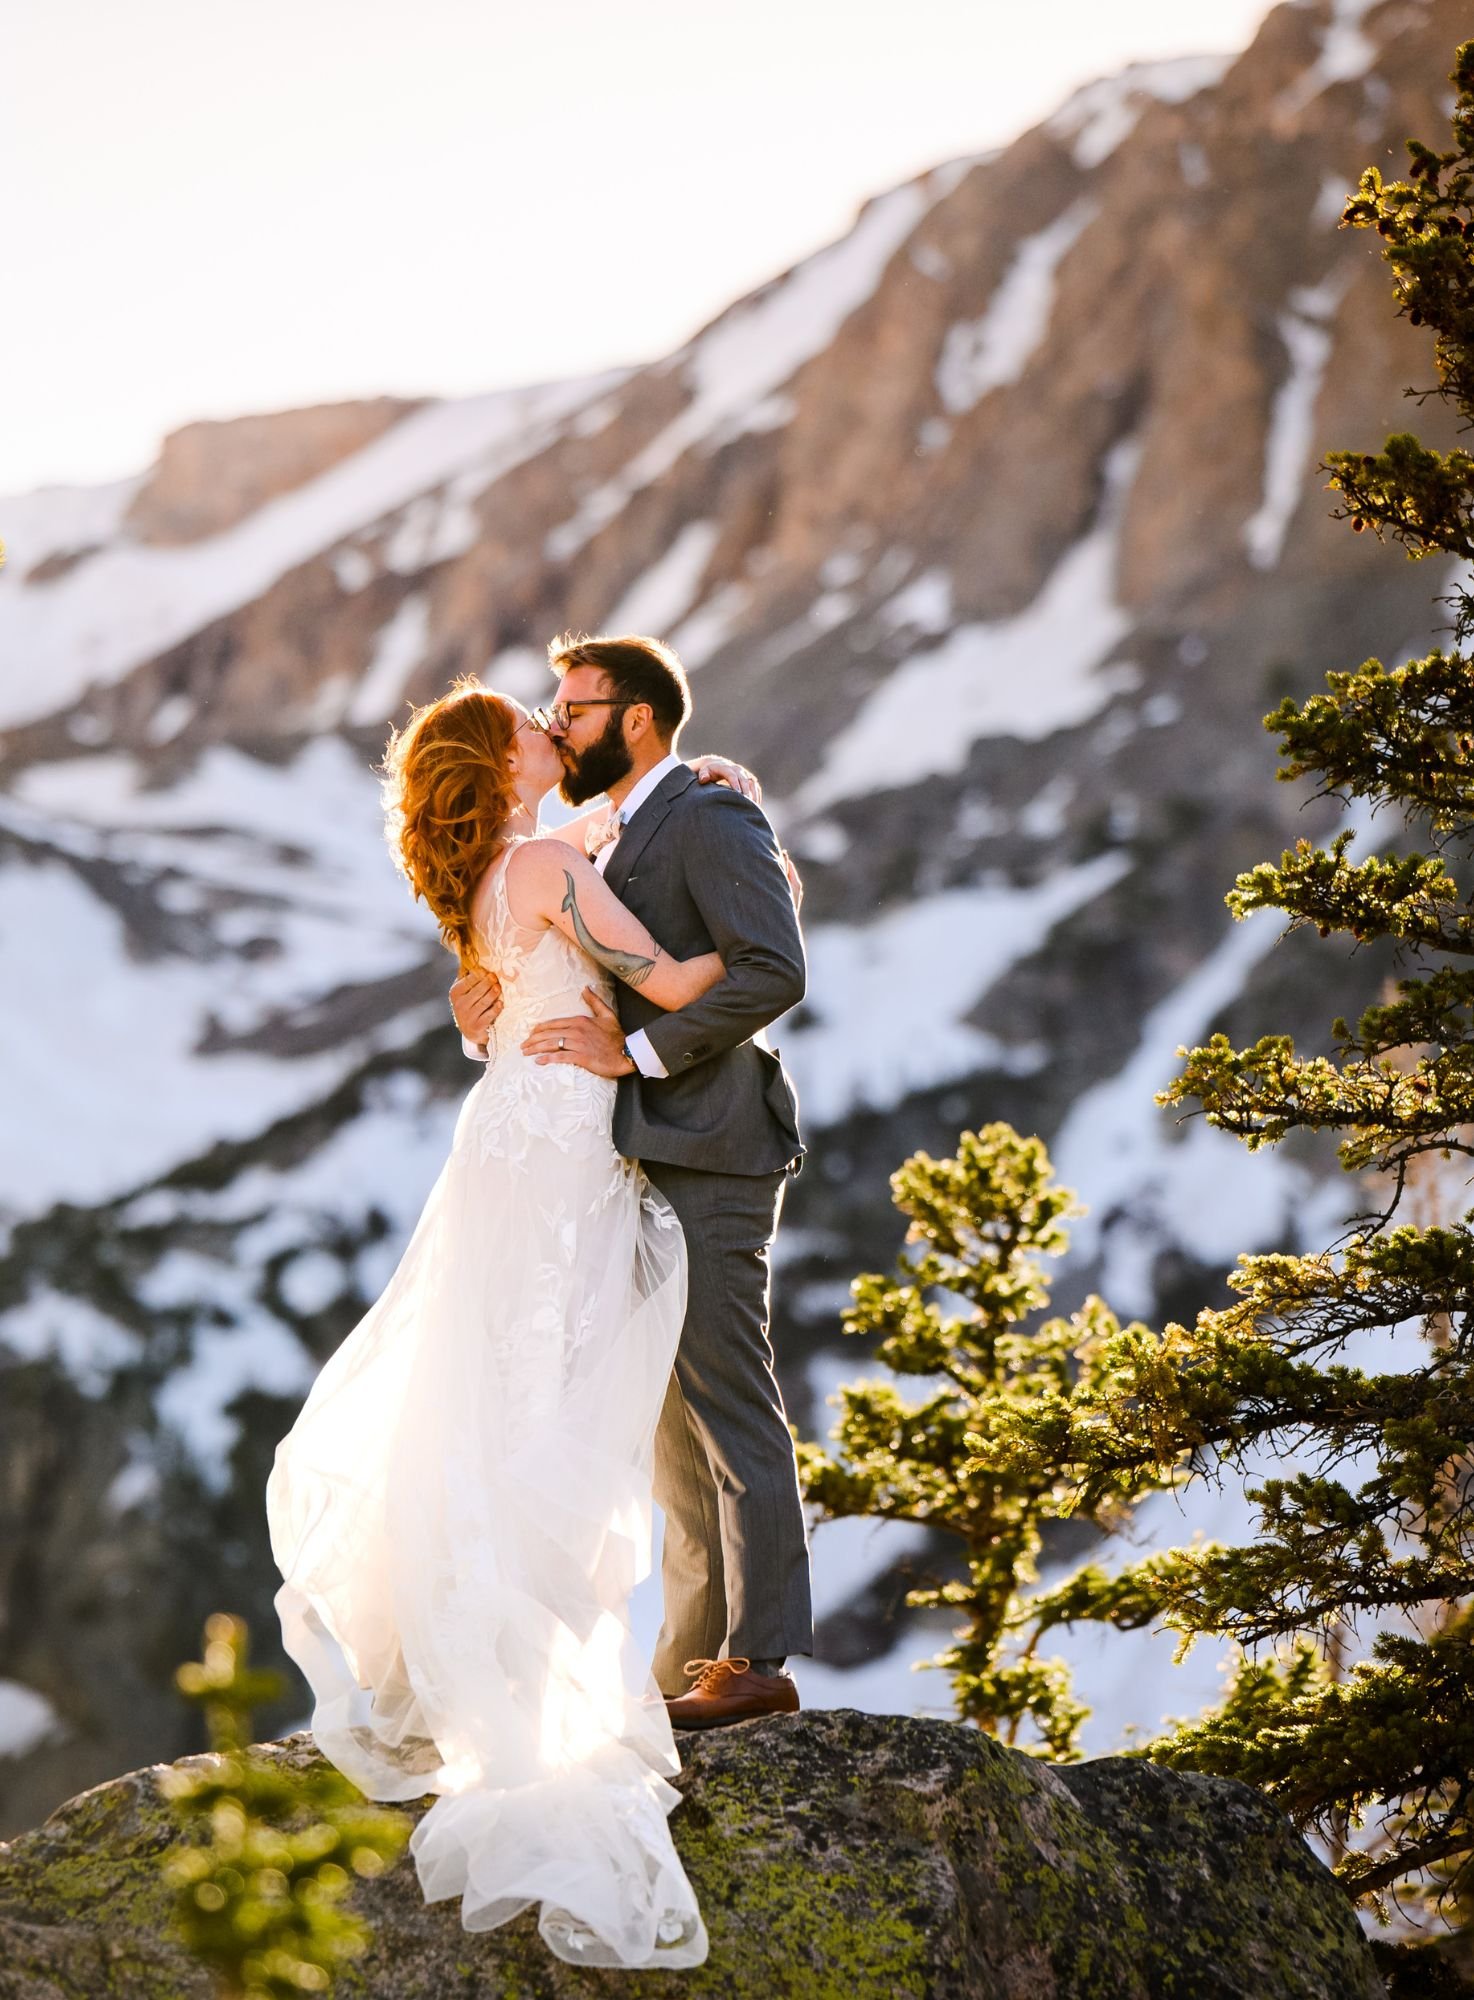 Outdoor wedding venue in Colorado